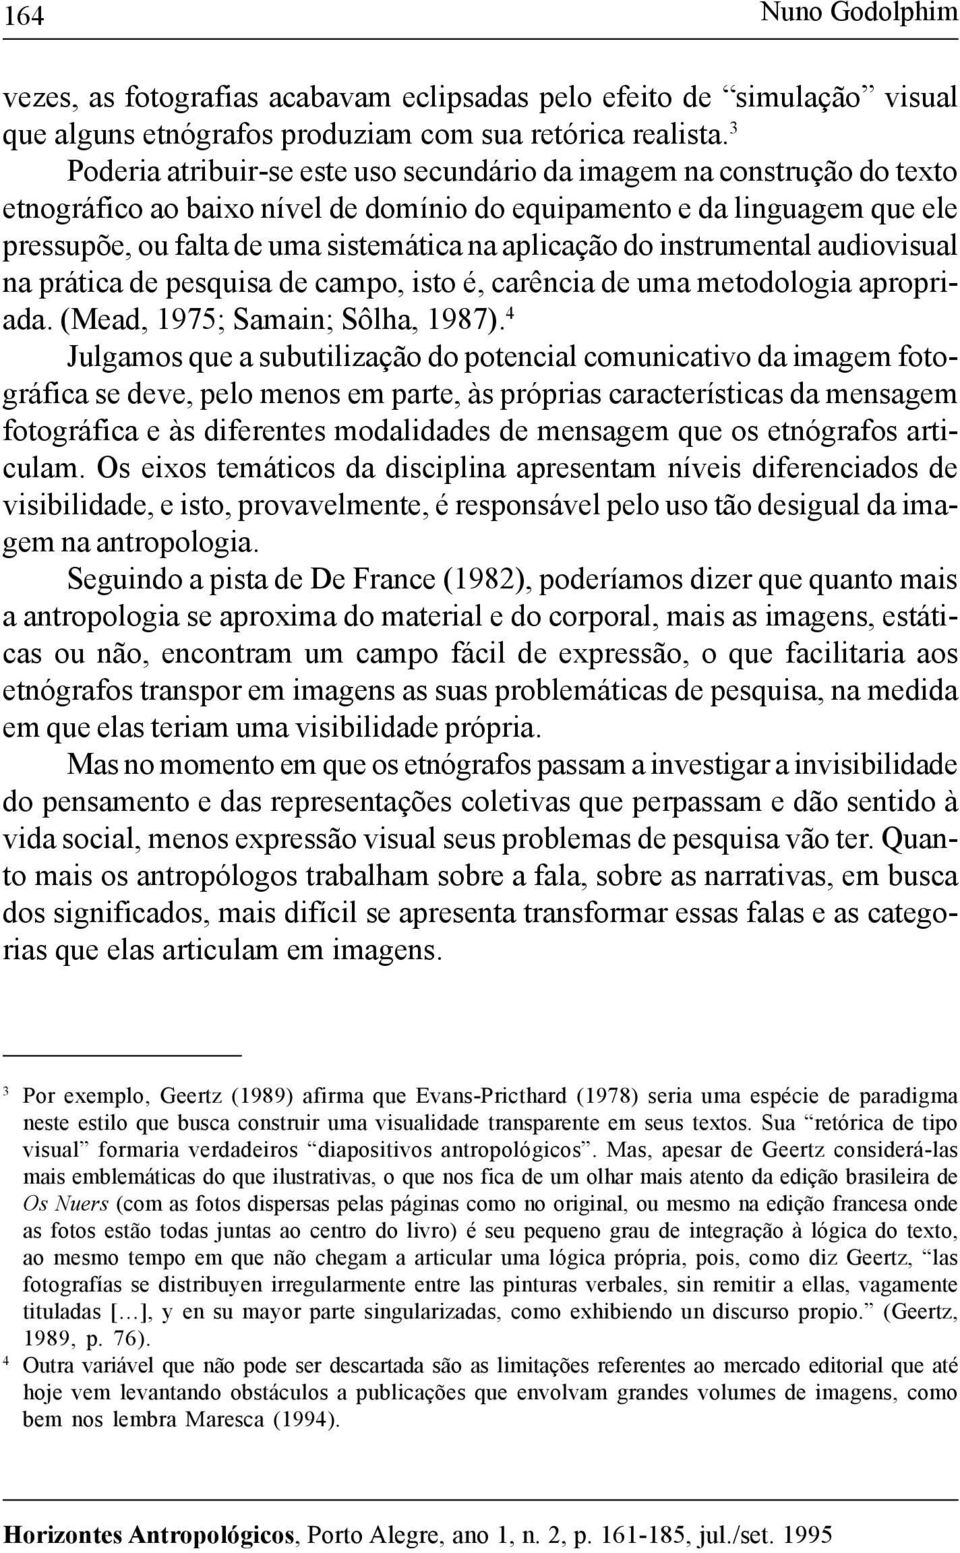 aplicação do instrumental audiovisual na prática de pesquisa de campo, isto é, carência de uma metodologia apropriada. (Mead, 1975; Samain; Sôlha, 1987).